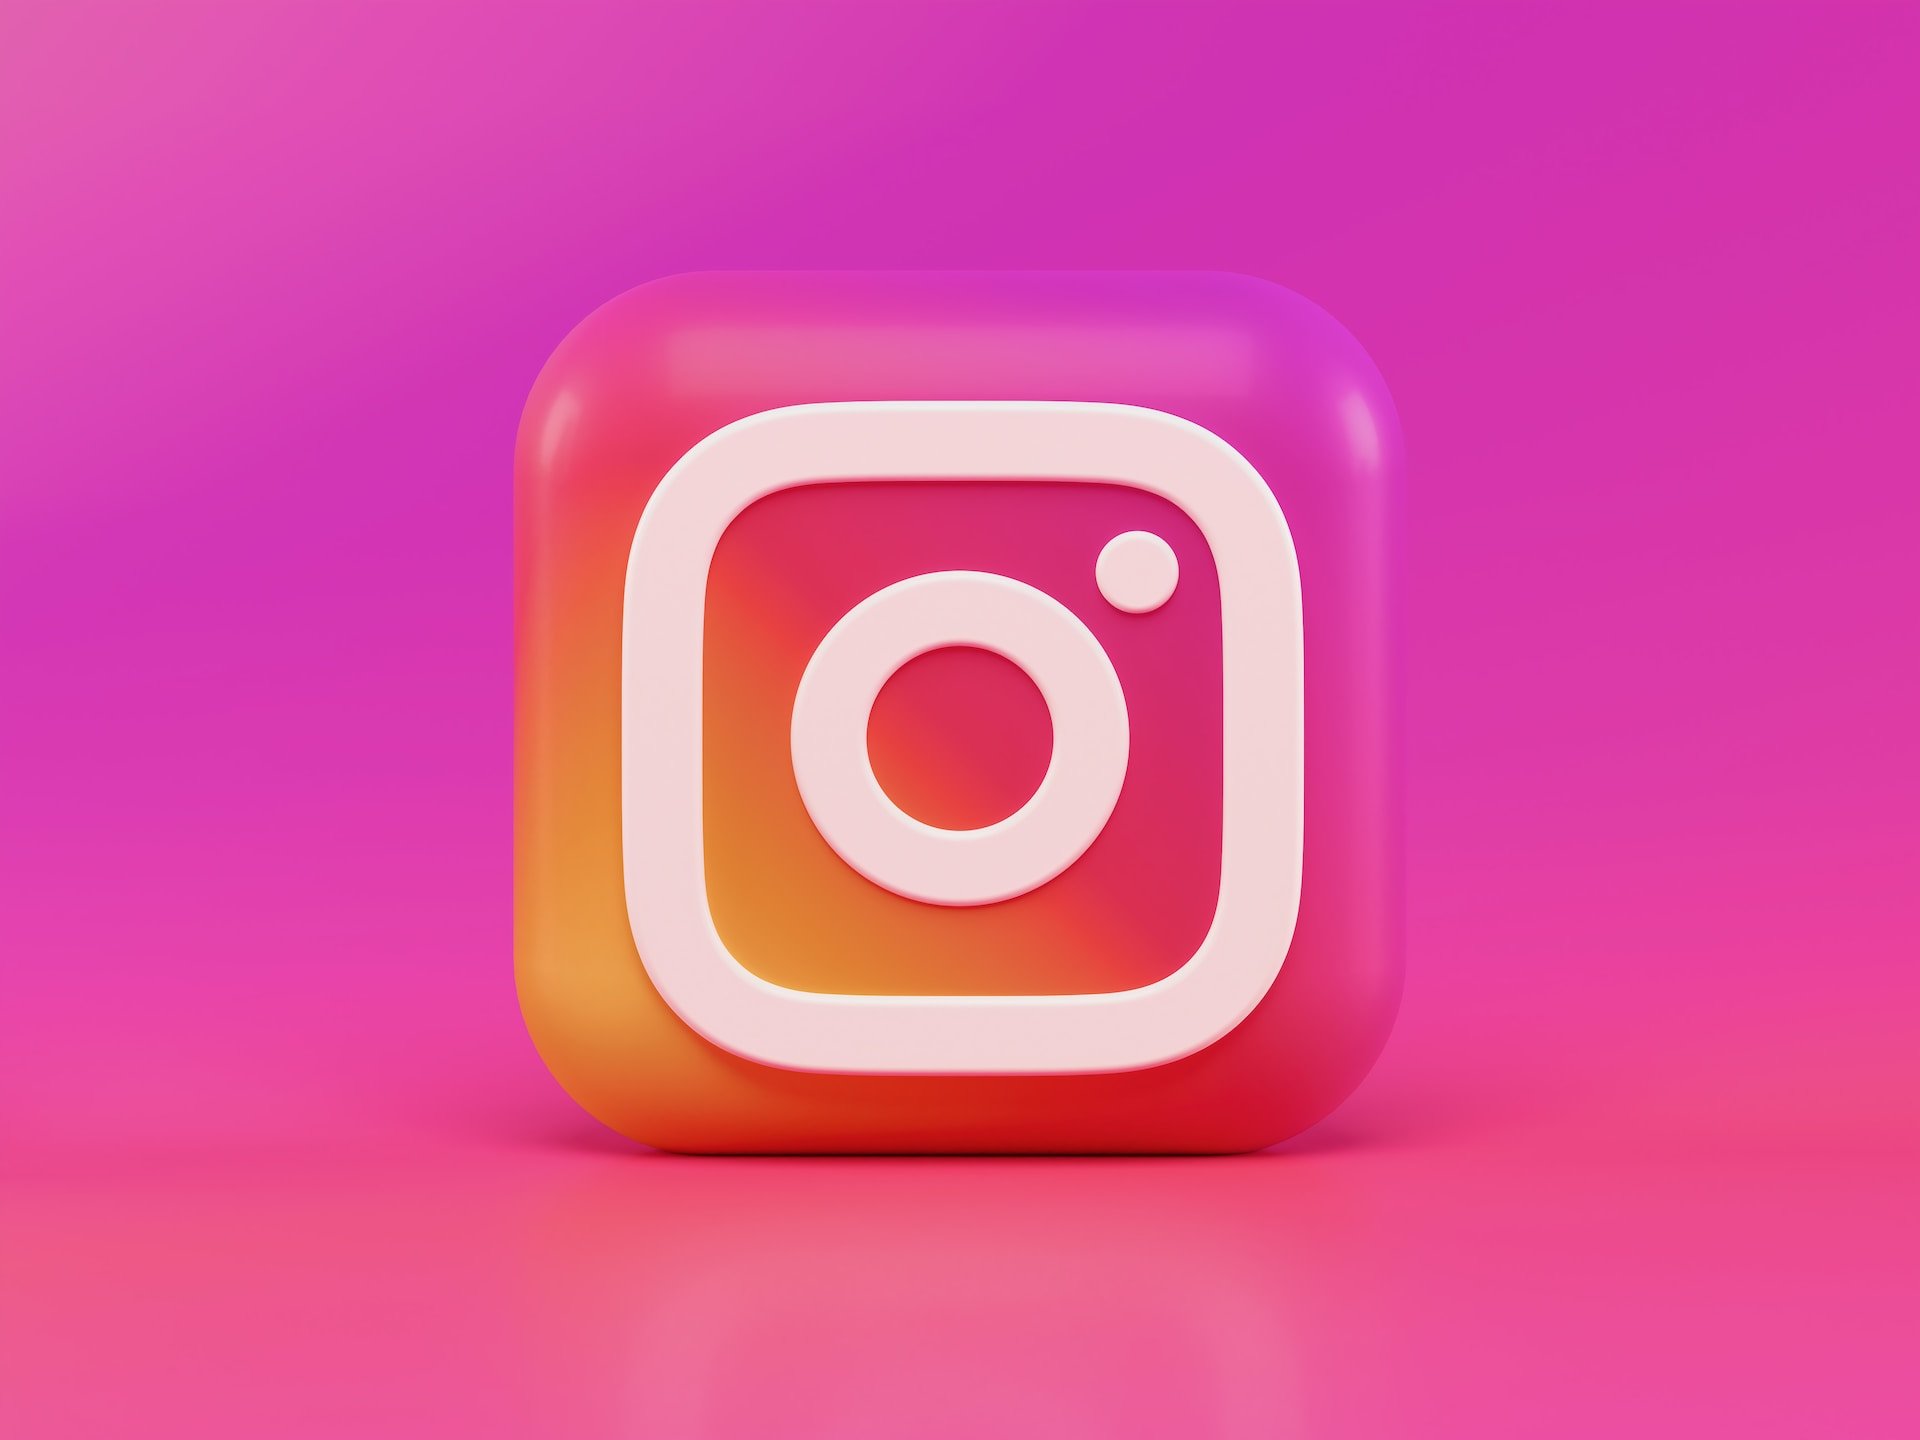 Instagram agora permite usar GIFs nos comentários de fotos e